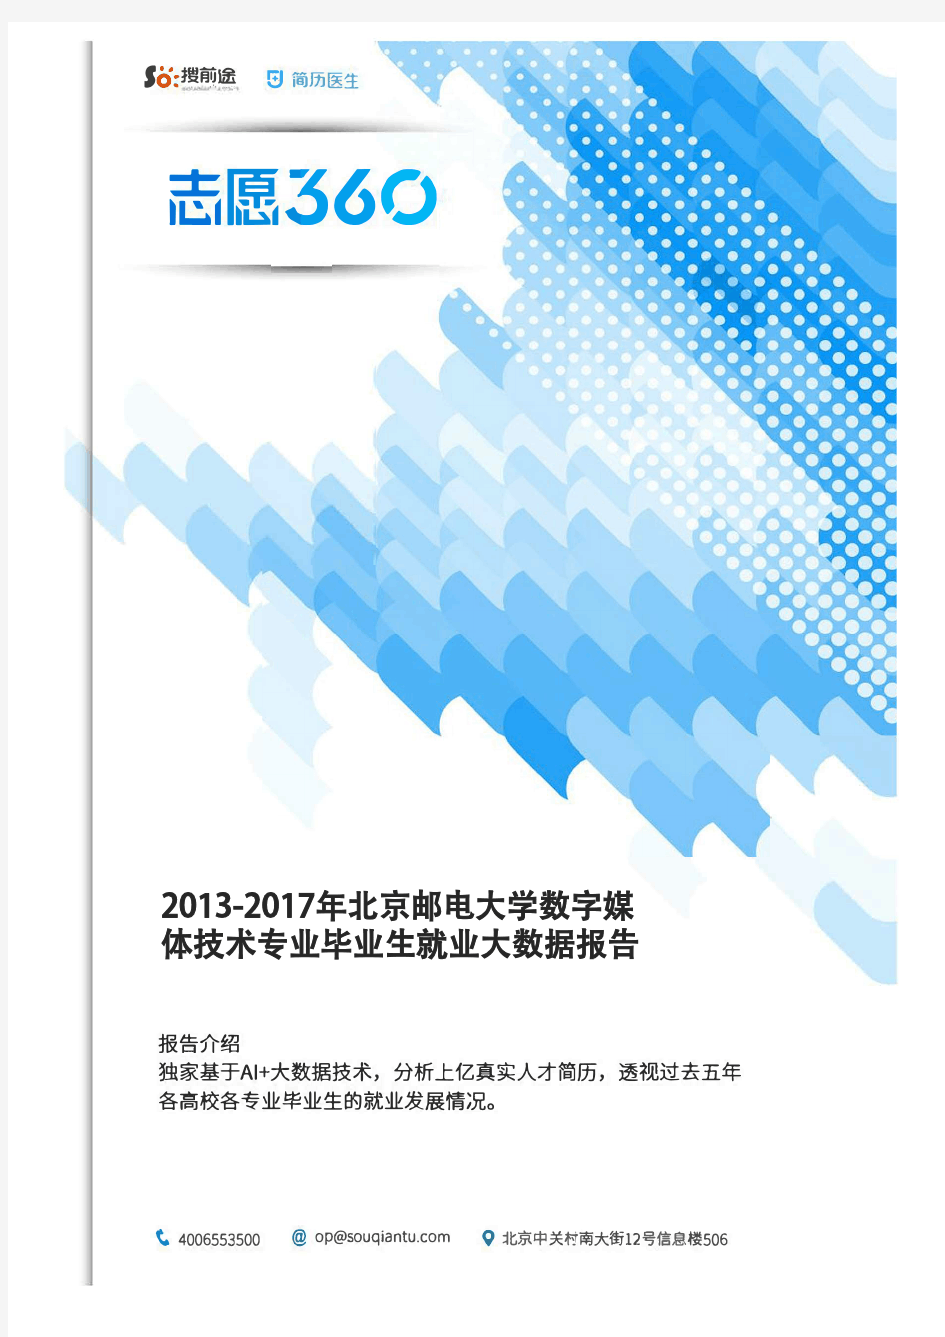 2013-2017年北京邮电大学数字媒体技术专业毕业生就业大数据报告